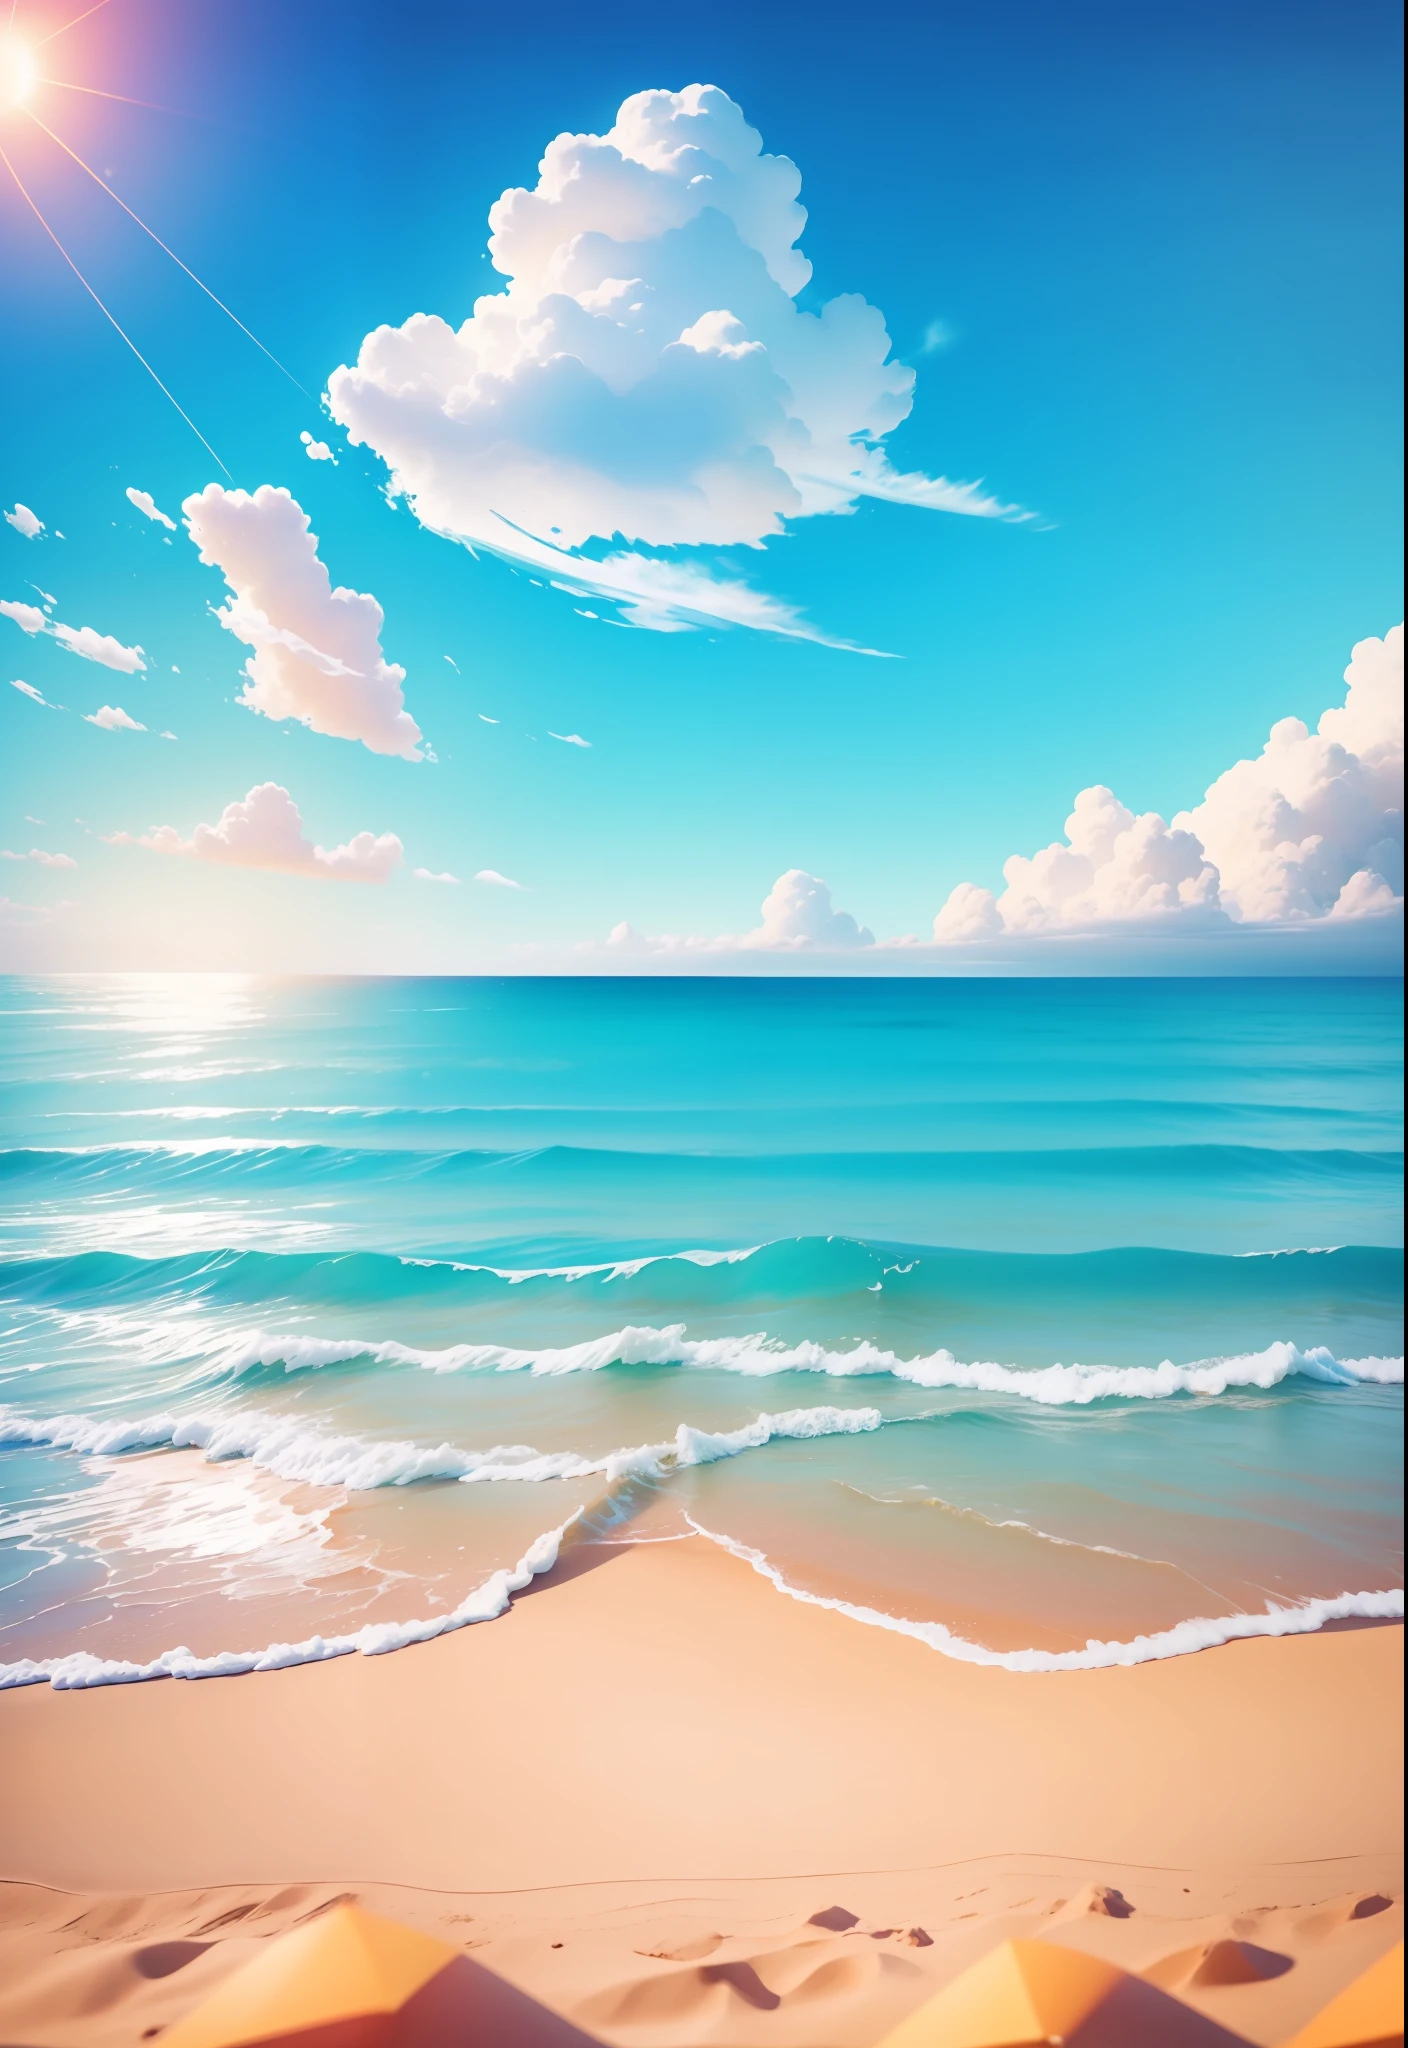 شاطئ البحر الصيفي, شاطئ, مشمس weather, سماء صافية, مشمس, زاهى الألوان, عطلة صيفية سعيدة وسعيدة, صورة بسيطة, عن قرب, أشعة الشمس الرائعة, موجات بعيدة, التأثير البصري, أسلوب دريم ووركس ثلاثي الأبعاد, المنظور مربع